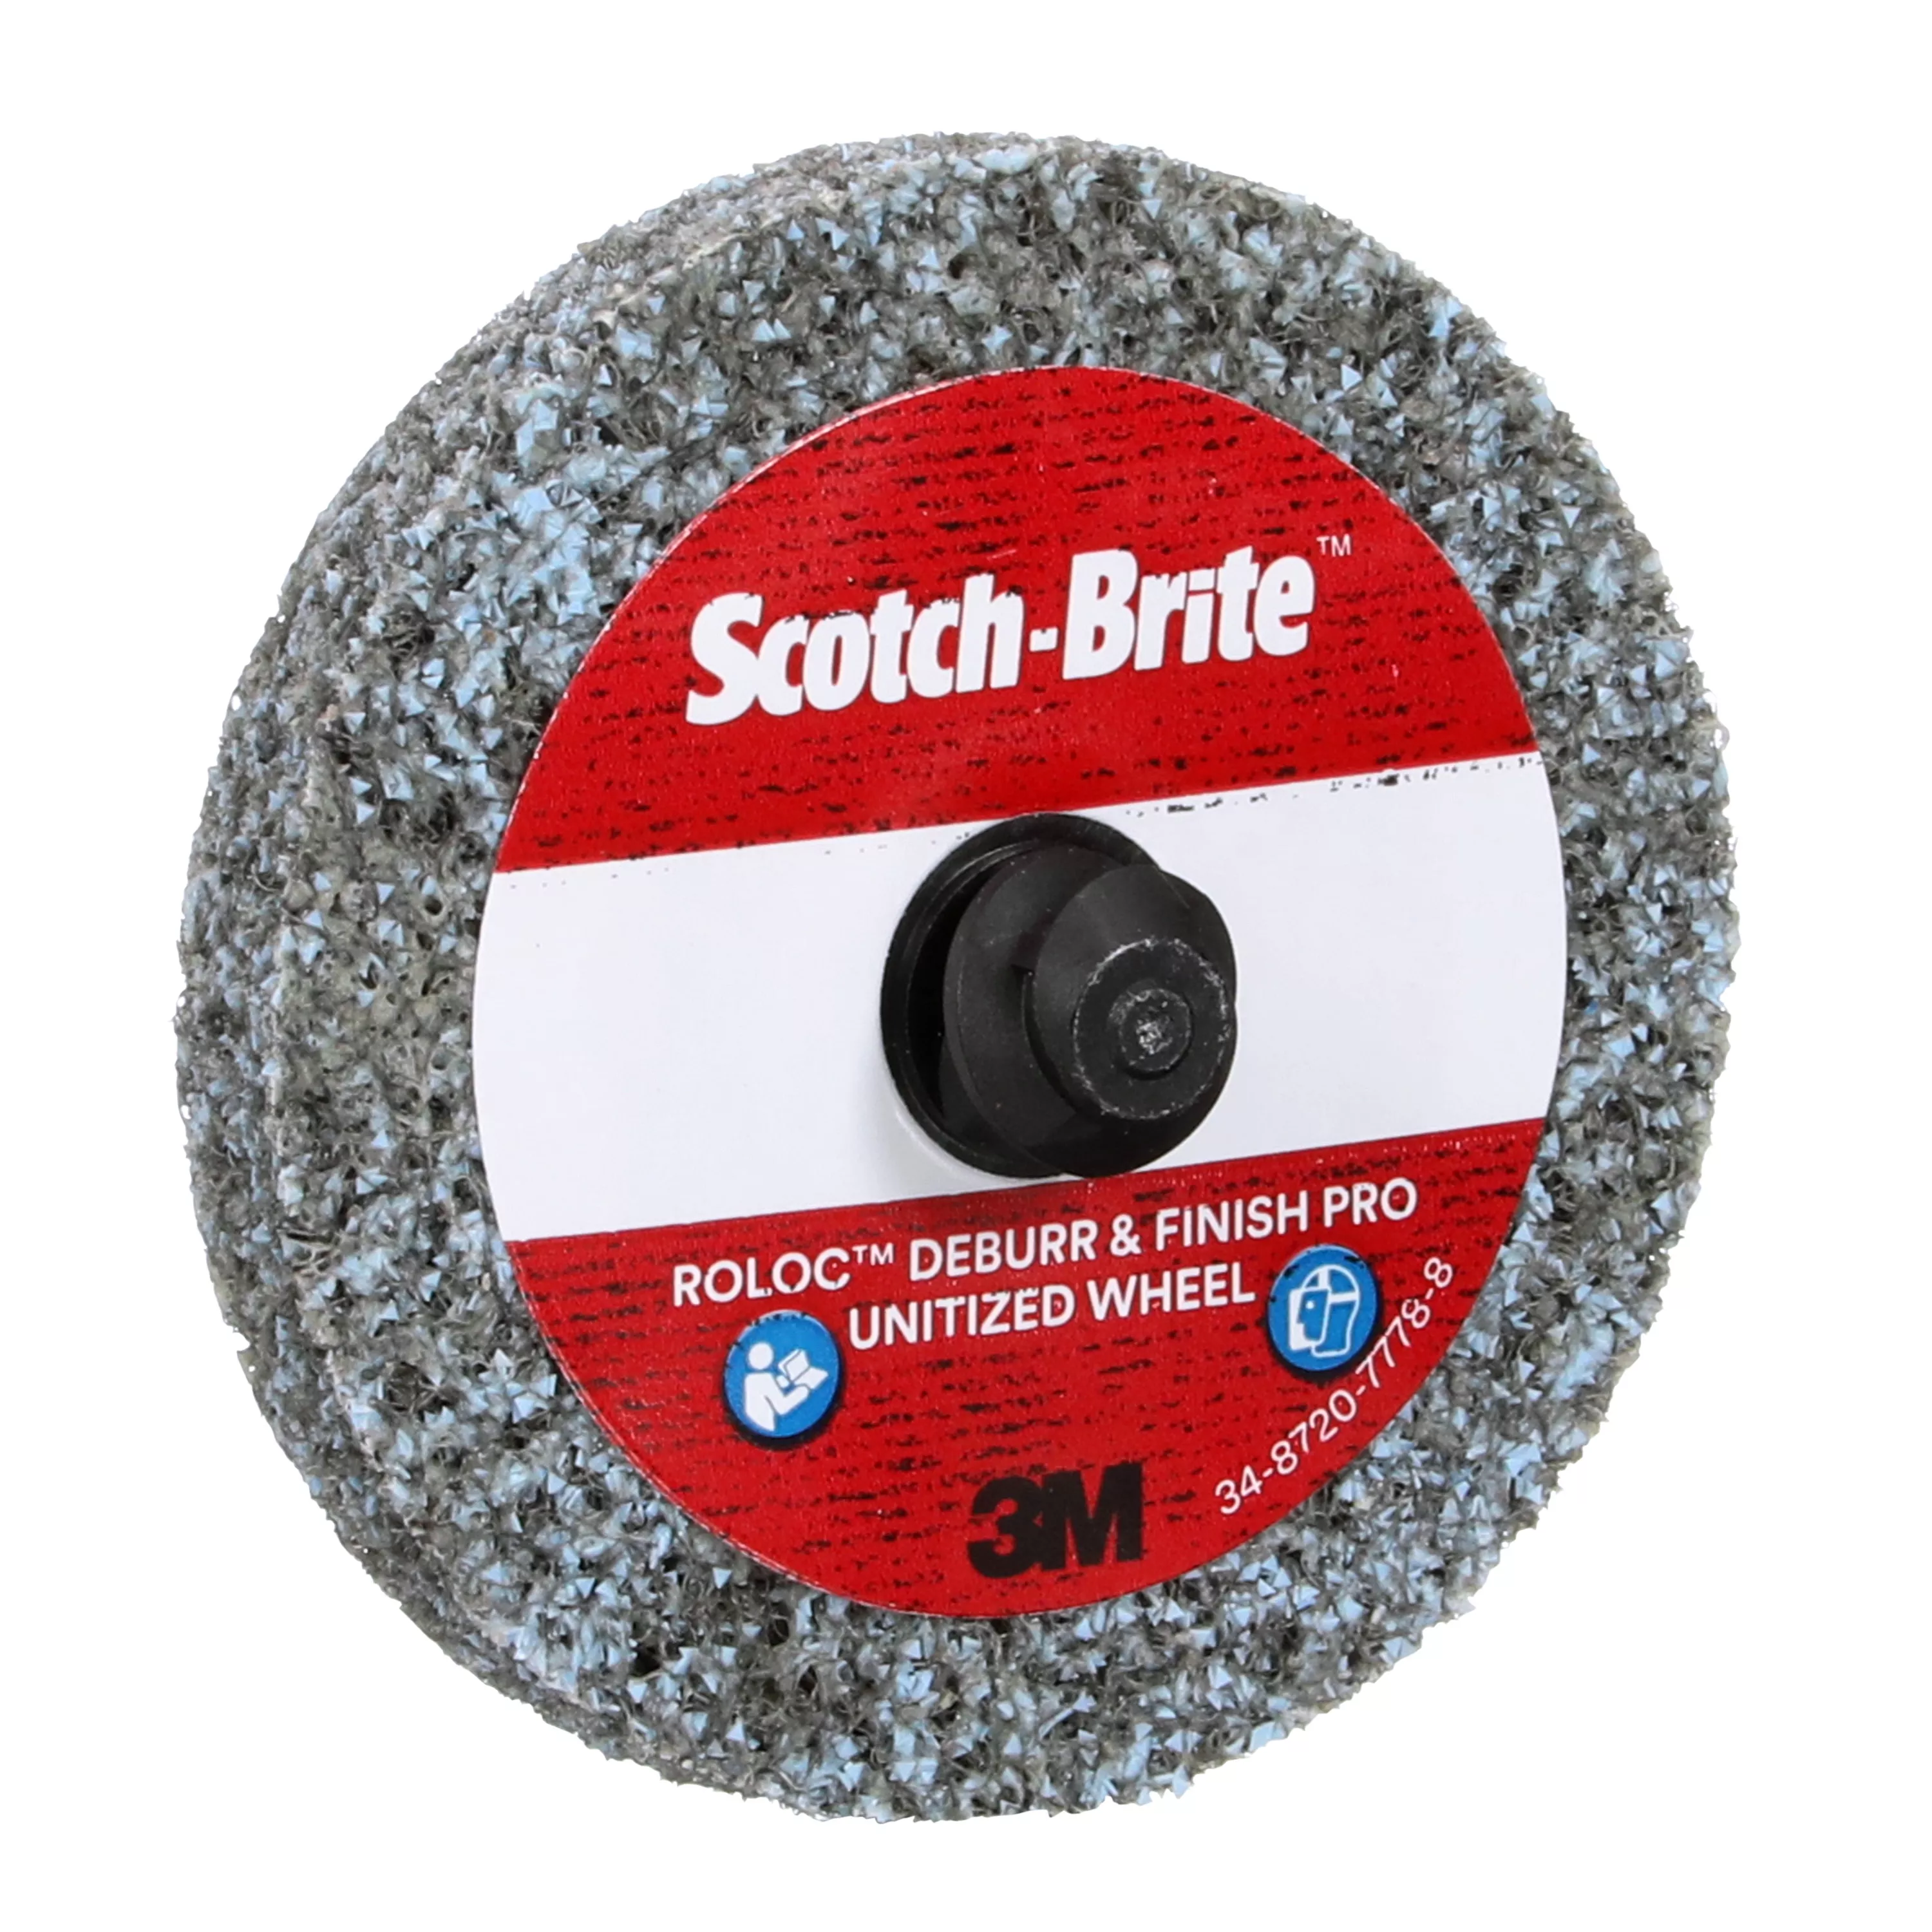 Product Number DP-UR | Scotch Brite™ Roloc™ Deburr & Finish PRO Unitized Wheel